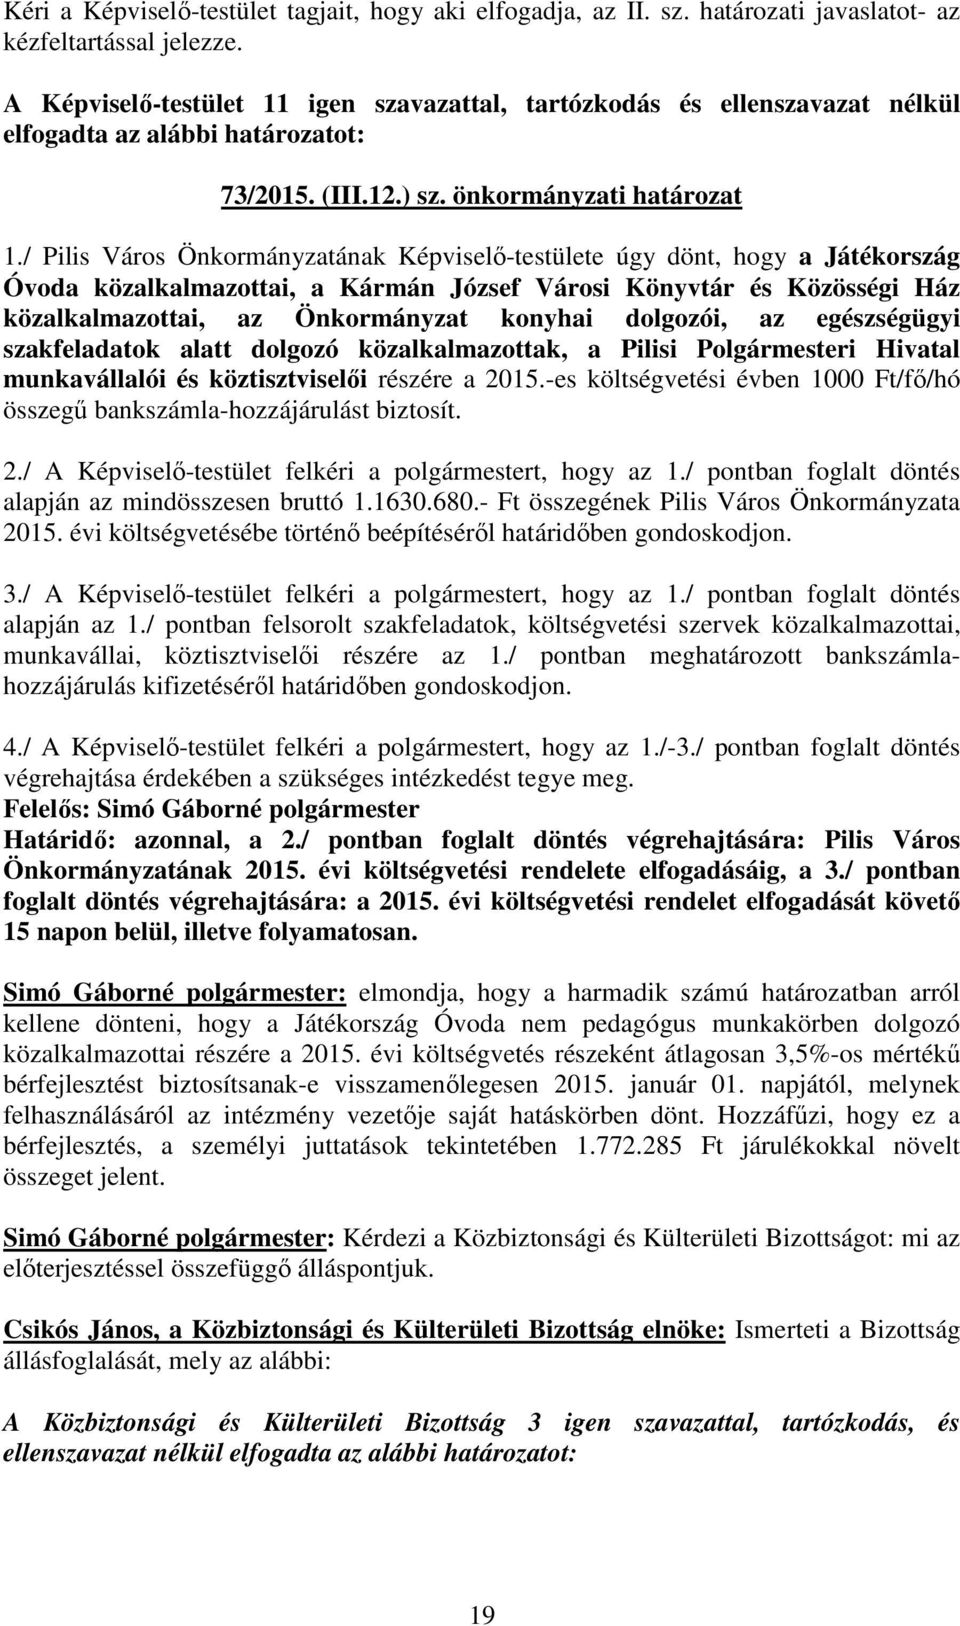 / Pilis Város Önkormányzatának Képviselő-testülete úgy dönt, hogy a Játékország Óvoda közalkalmazottai, a Kármán József Városi Könyvtár és Közösségi Ház közalkalmazottai, az Önkormányzat konyhai